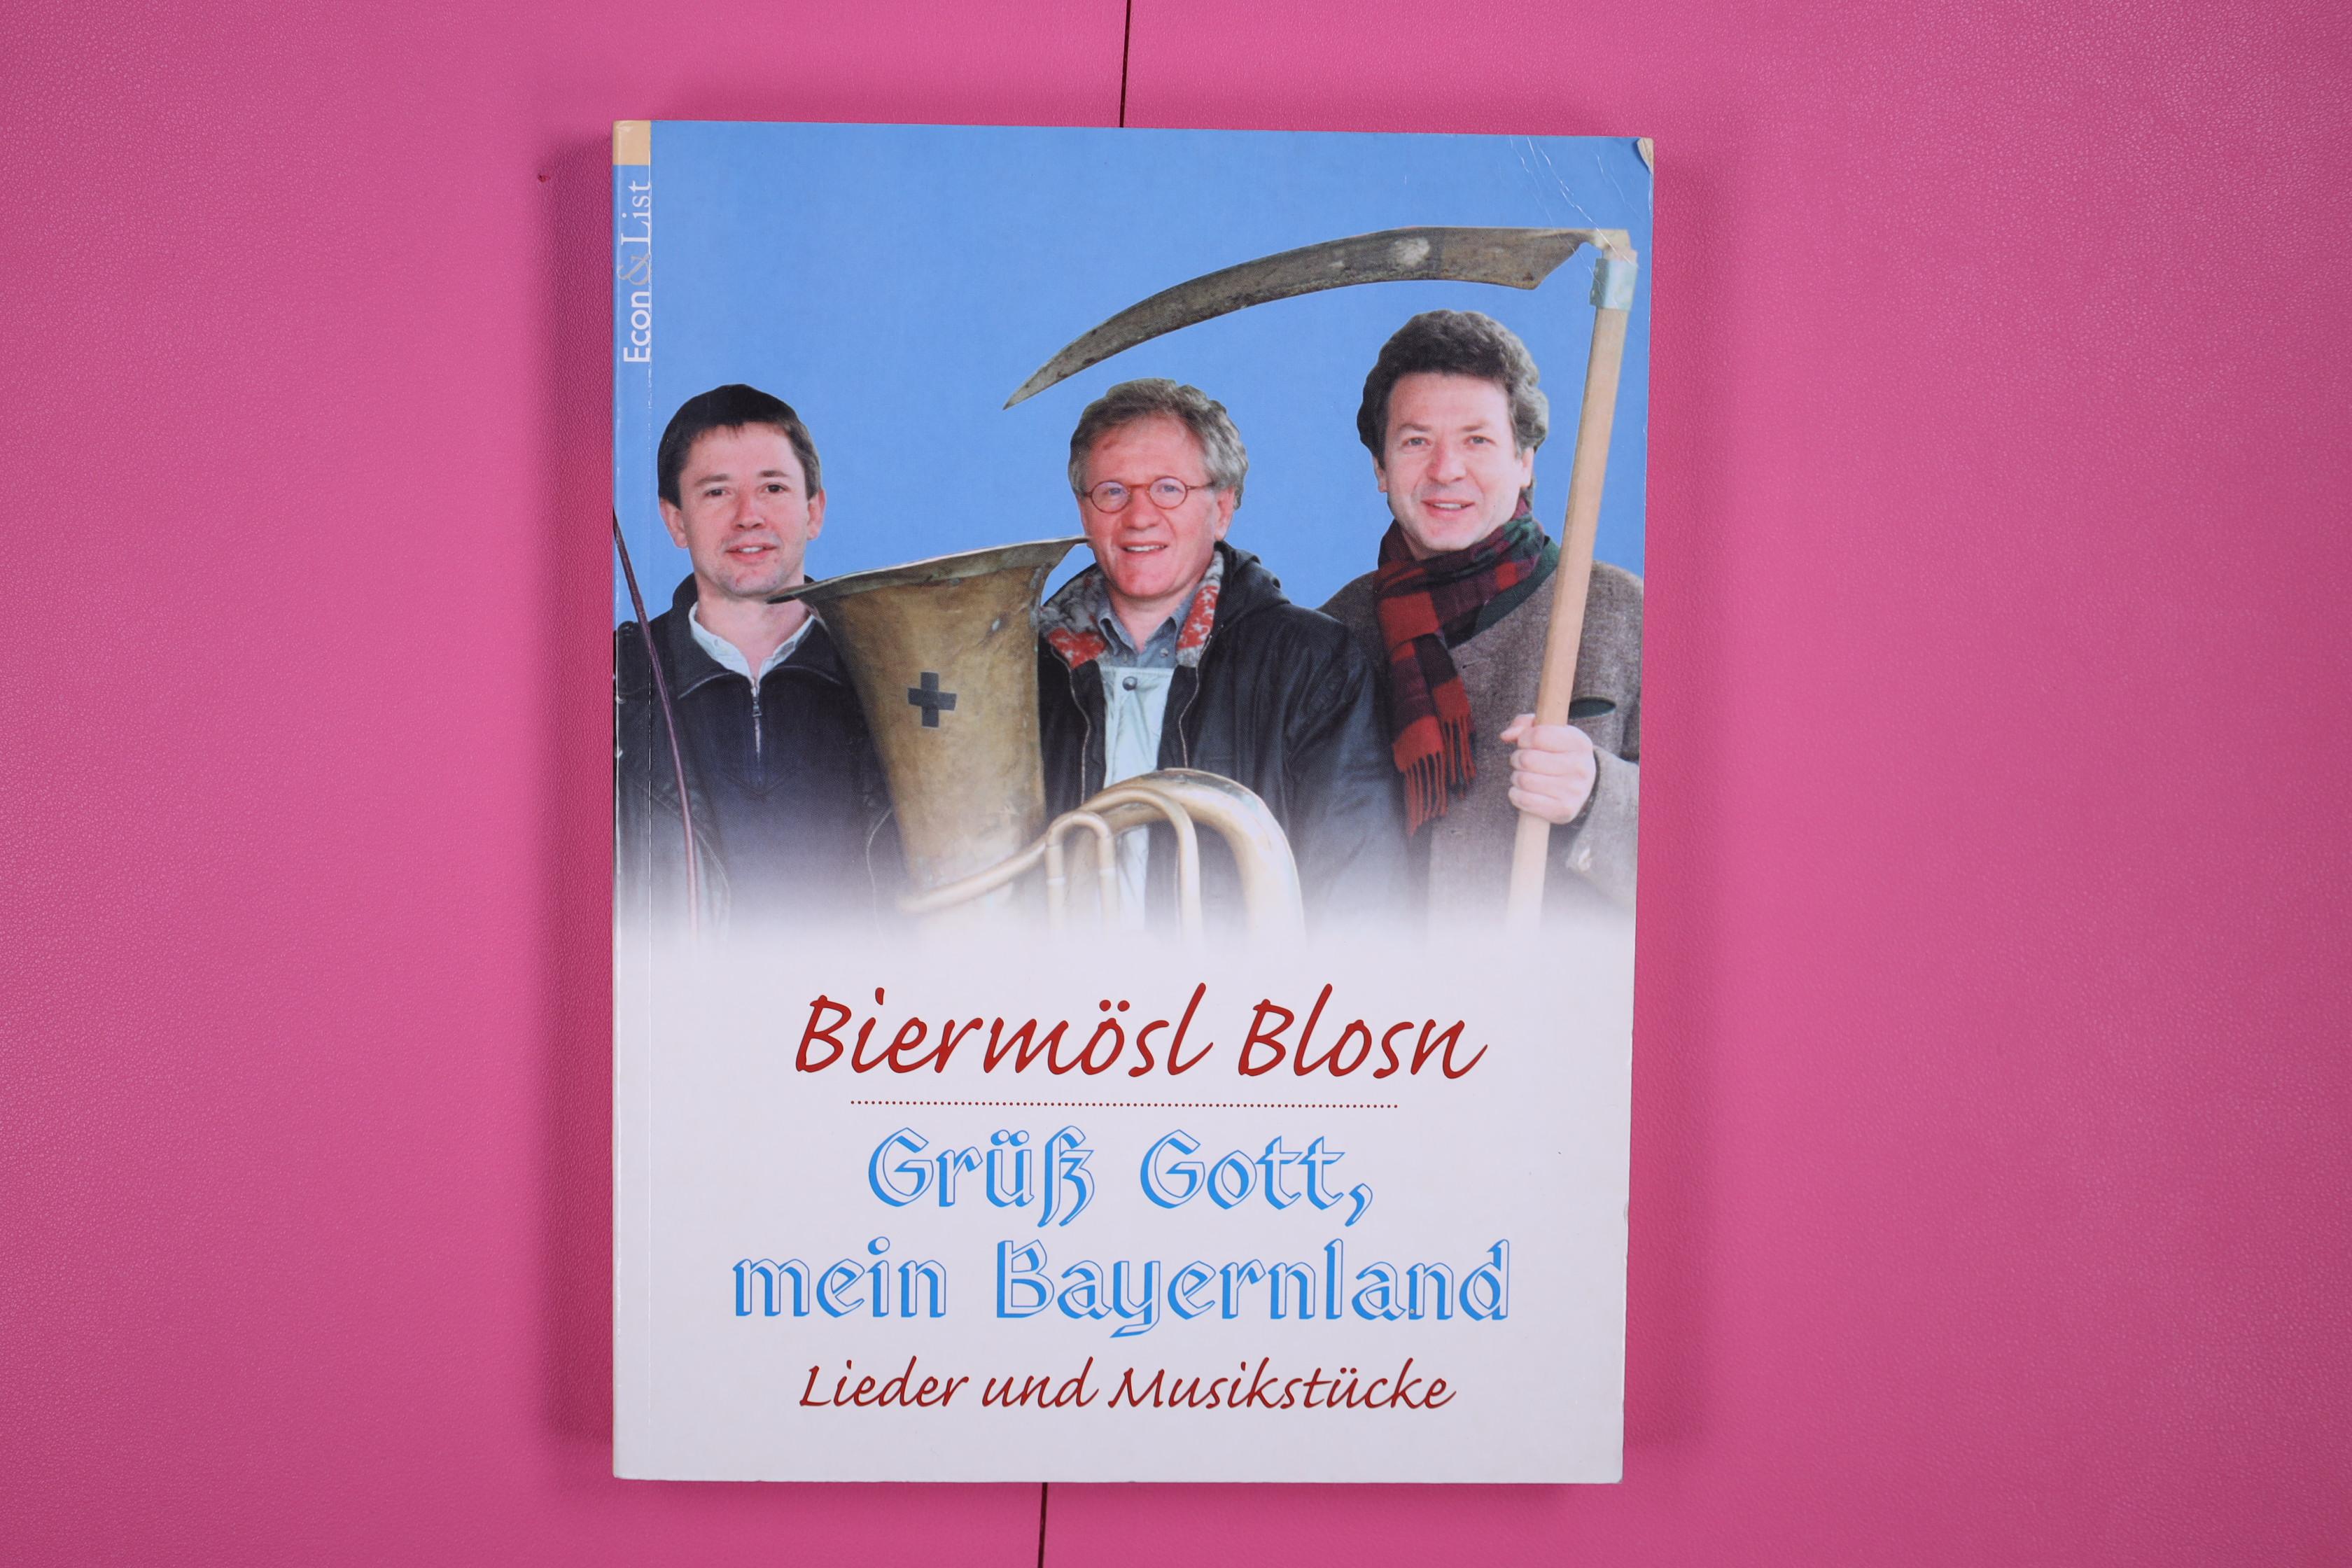 BIERMÖSL-BLOSN - GRÜSS GOTT, MEIN BAYERNLAND. Lieder- und Musikstücke ; mit einem Grusswort von Gerhard Polt - Biermösl Blosn